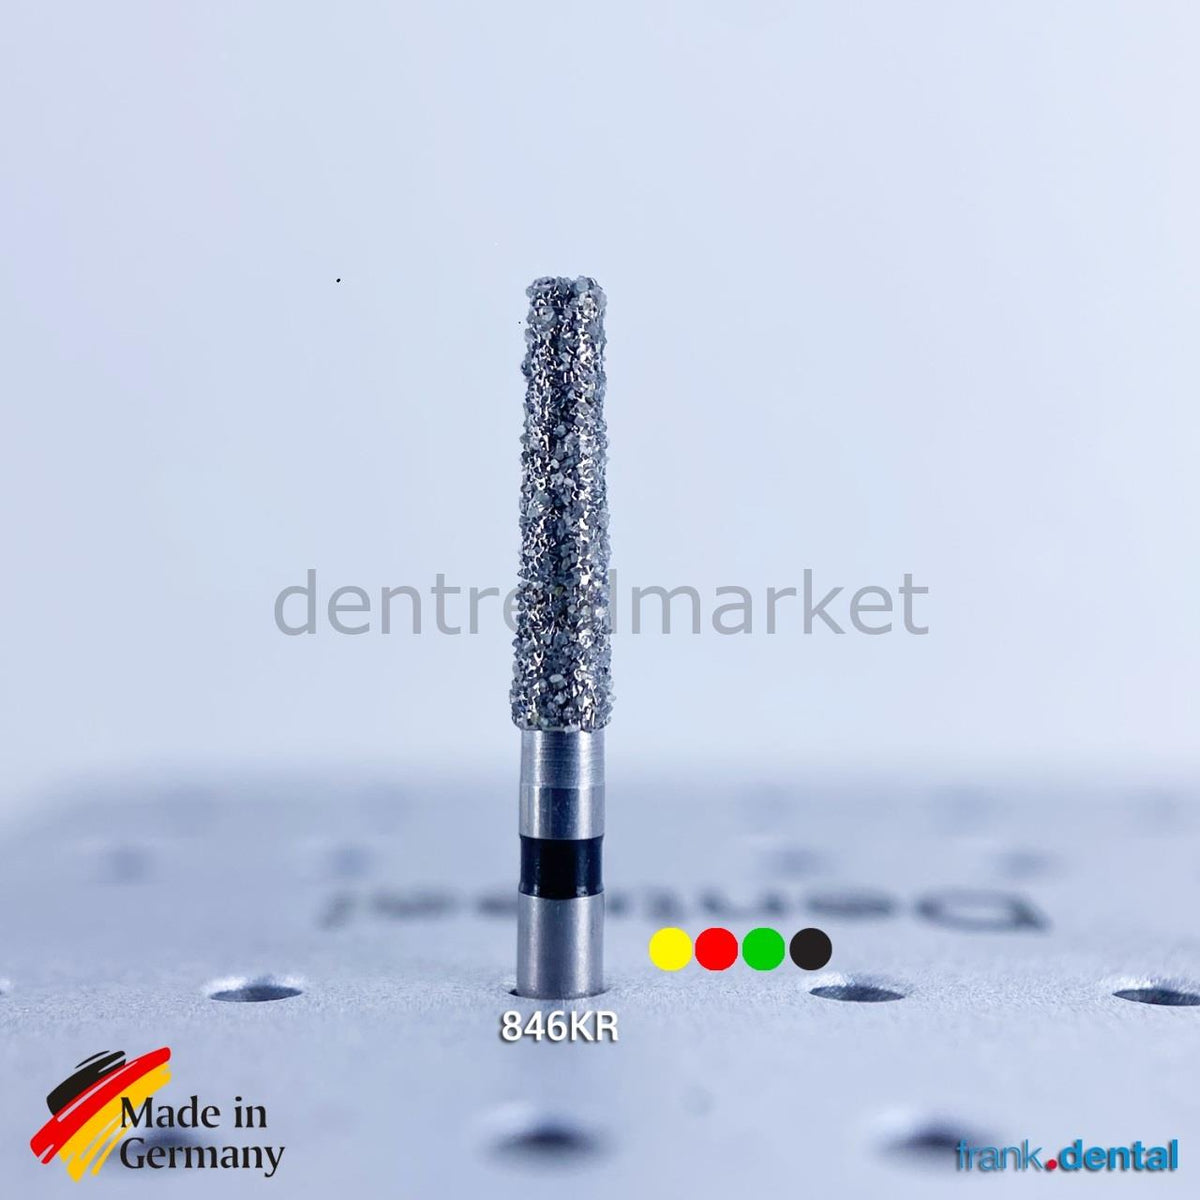 DentrealStore - Frank Dental Dental Natural Diamond Bur - 847RA - For Contra-Angle - 5 Pcs